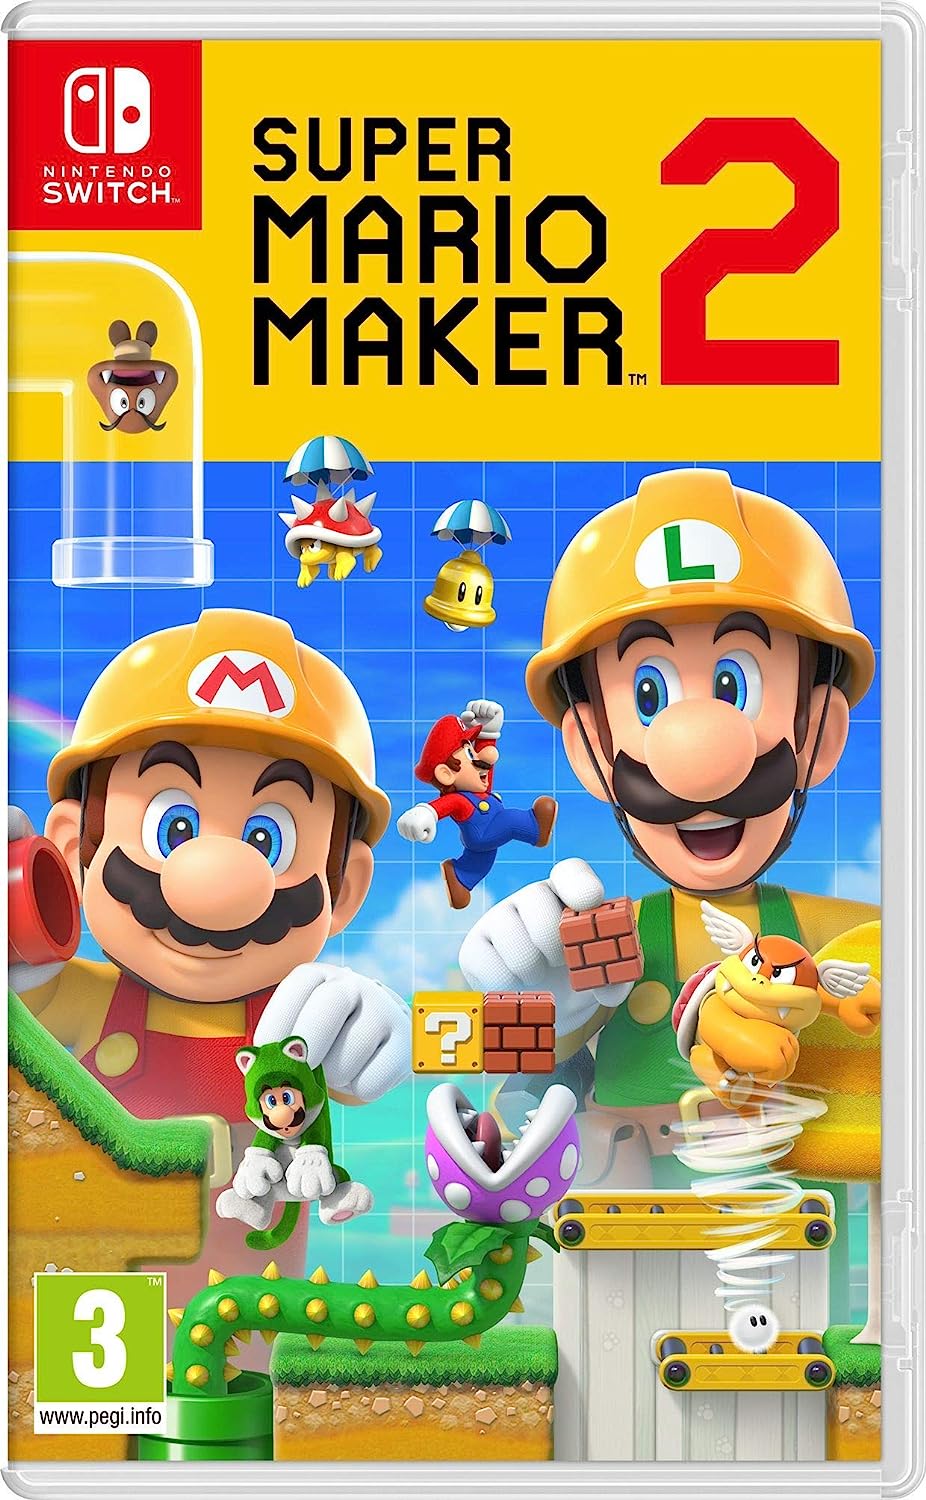 Nintendo Switch - Super Mario Maker 2 - A - PEGI 3